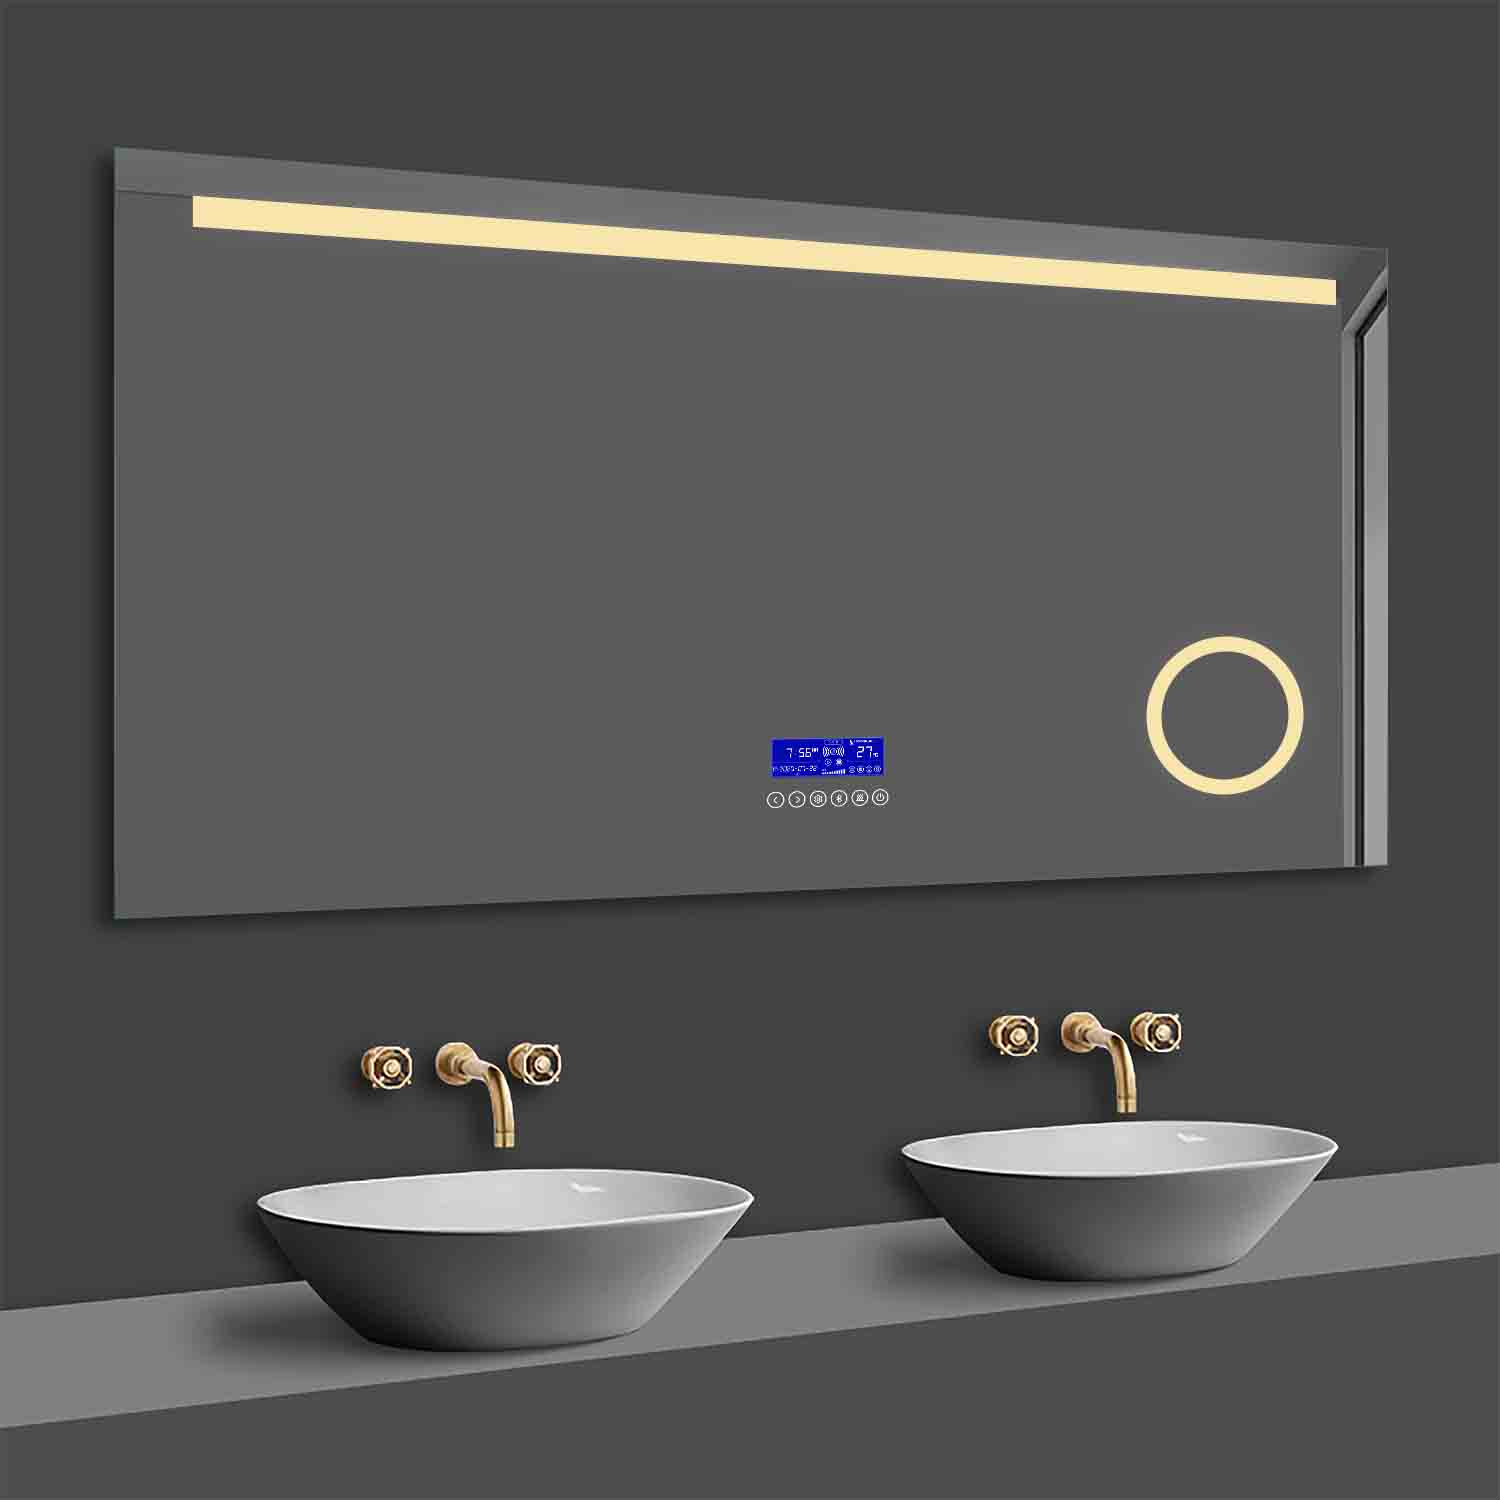 LED Spiegel 80x60 cm Bluetooth LED Schminkspiegel TOUCH BESCHLAGFREI Wandspiegel Kalt/Warmweiß